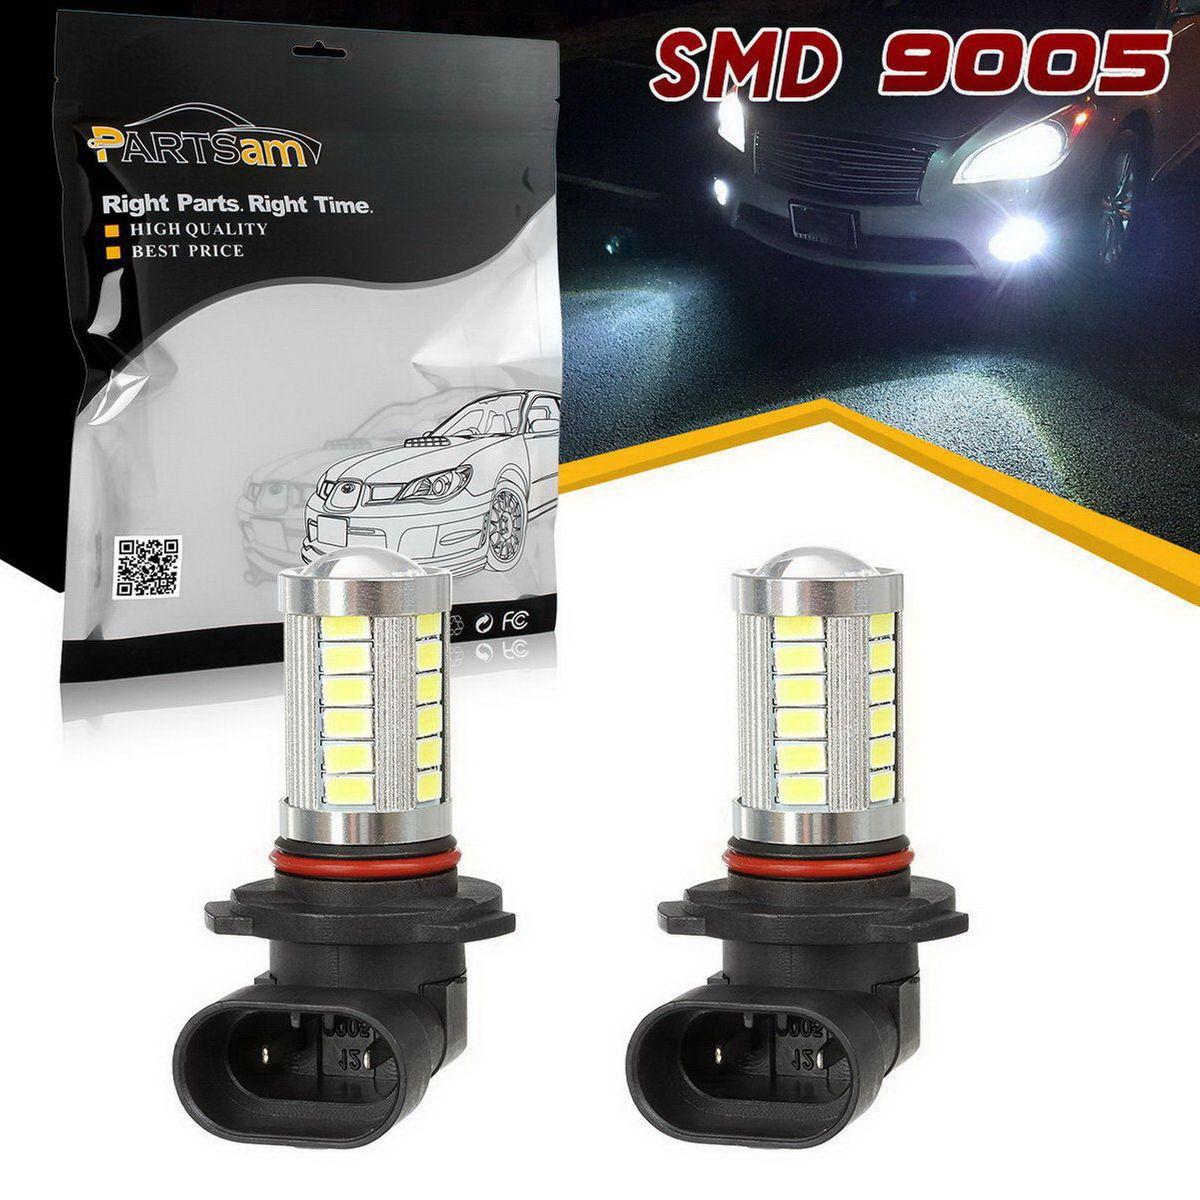 A Pair 9005 HB3 LED Fog Driving Light Bulb DRL 6000K for Chevrolet Ford GMC